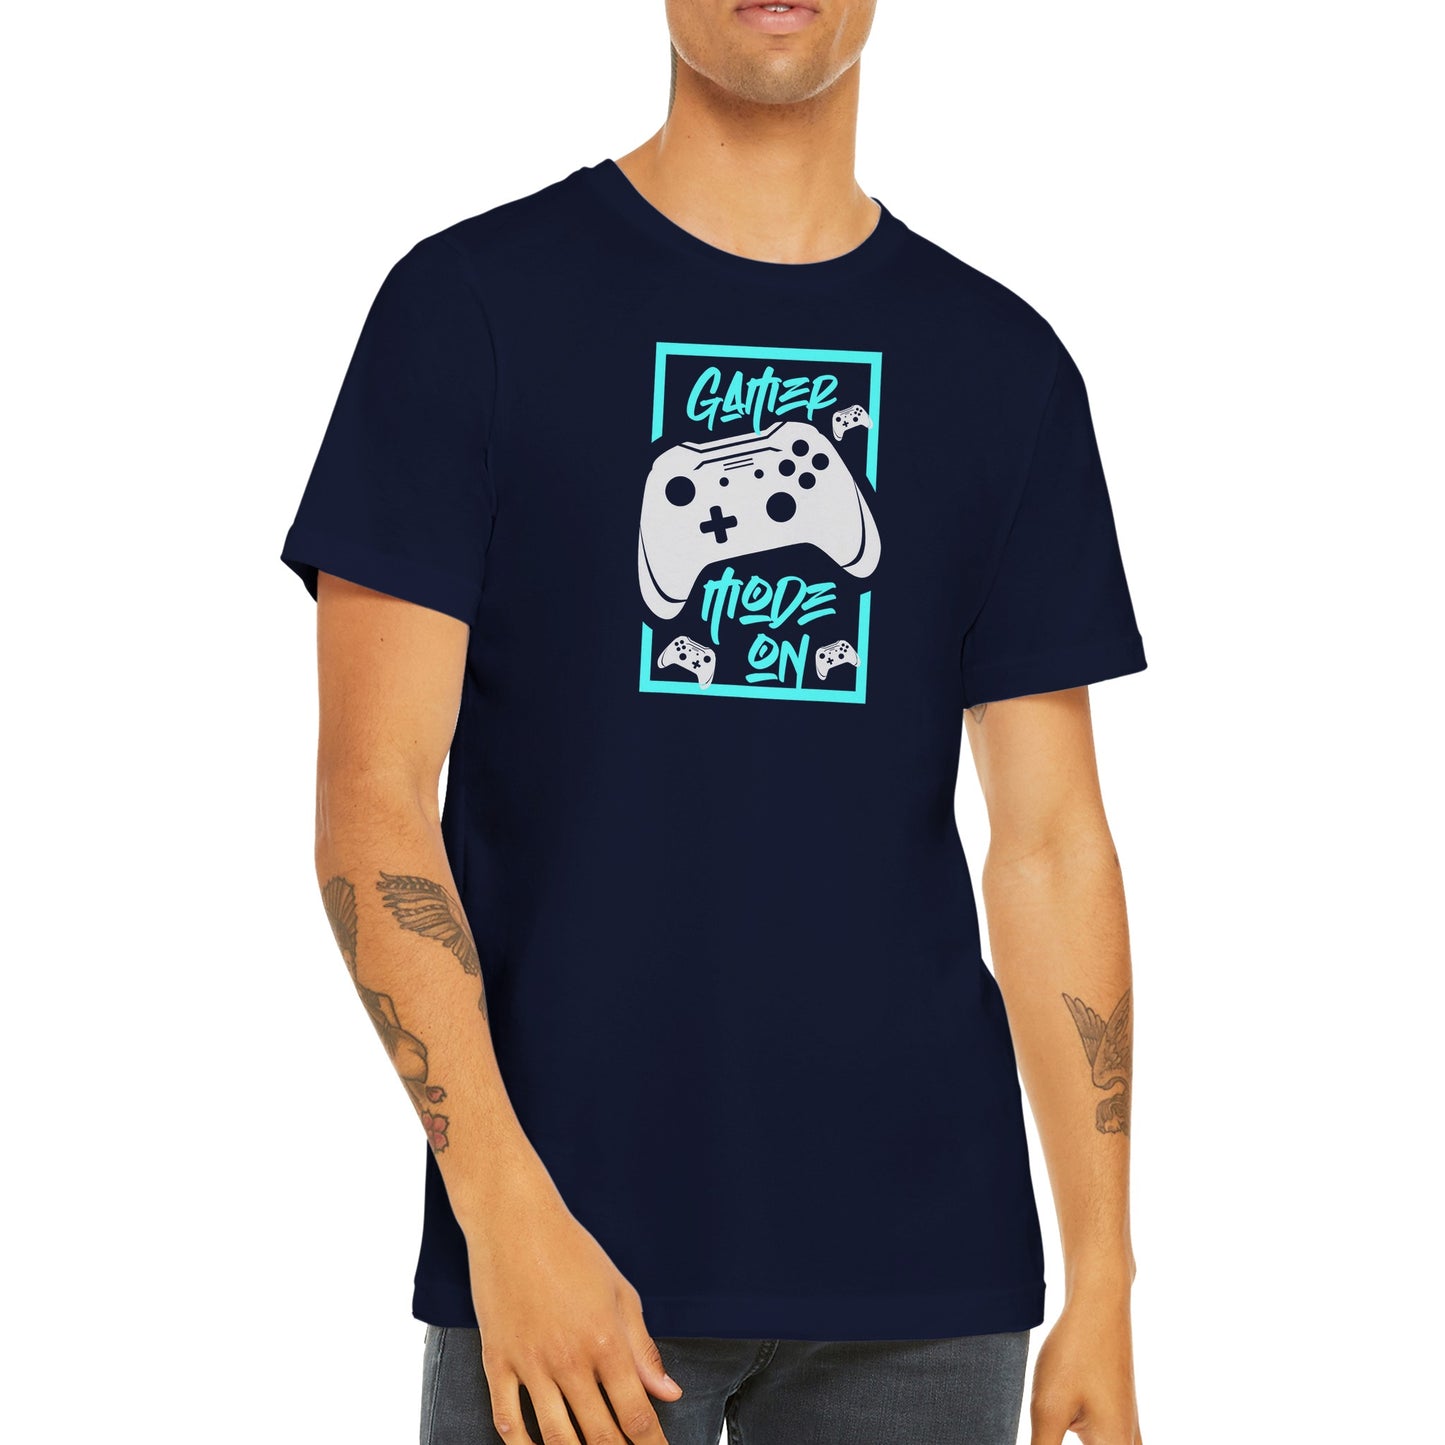 Gaming T-shirts - Gamer Mode On - Premium Unisex T-shirt